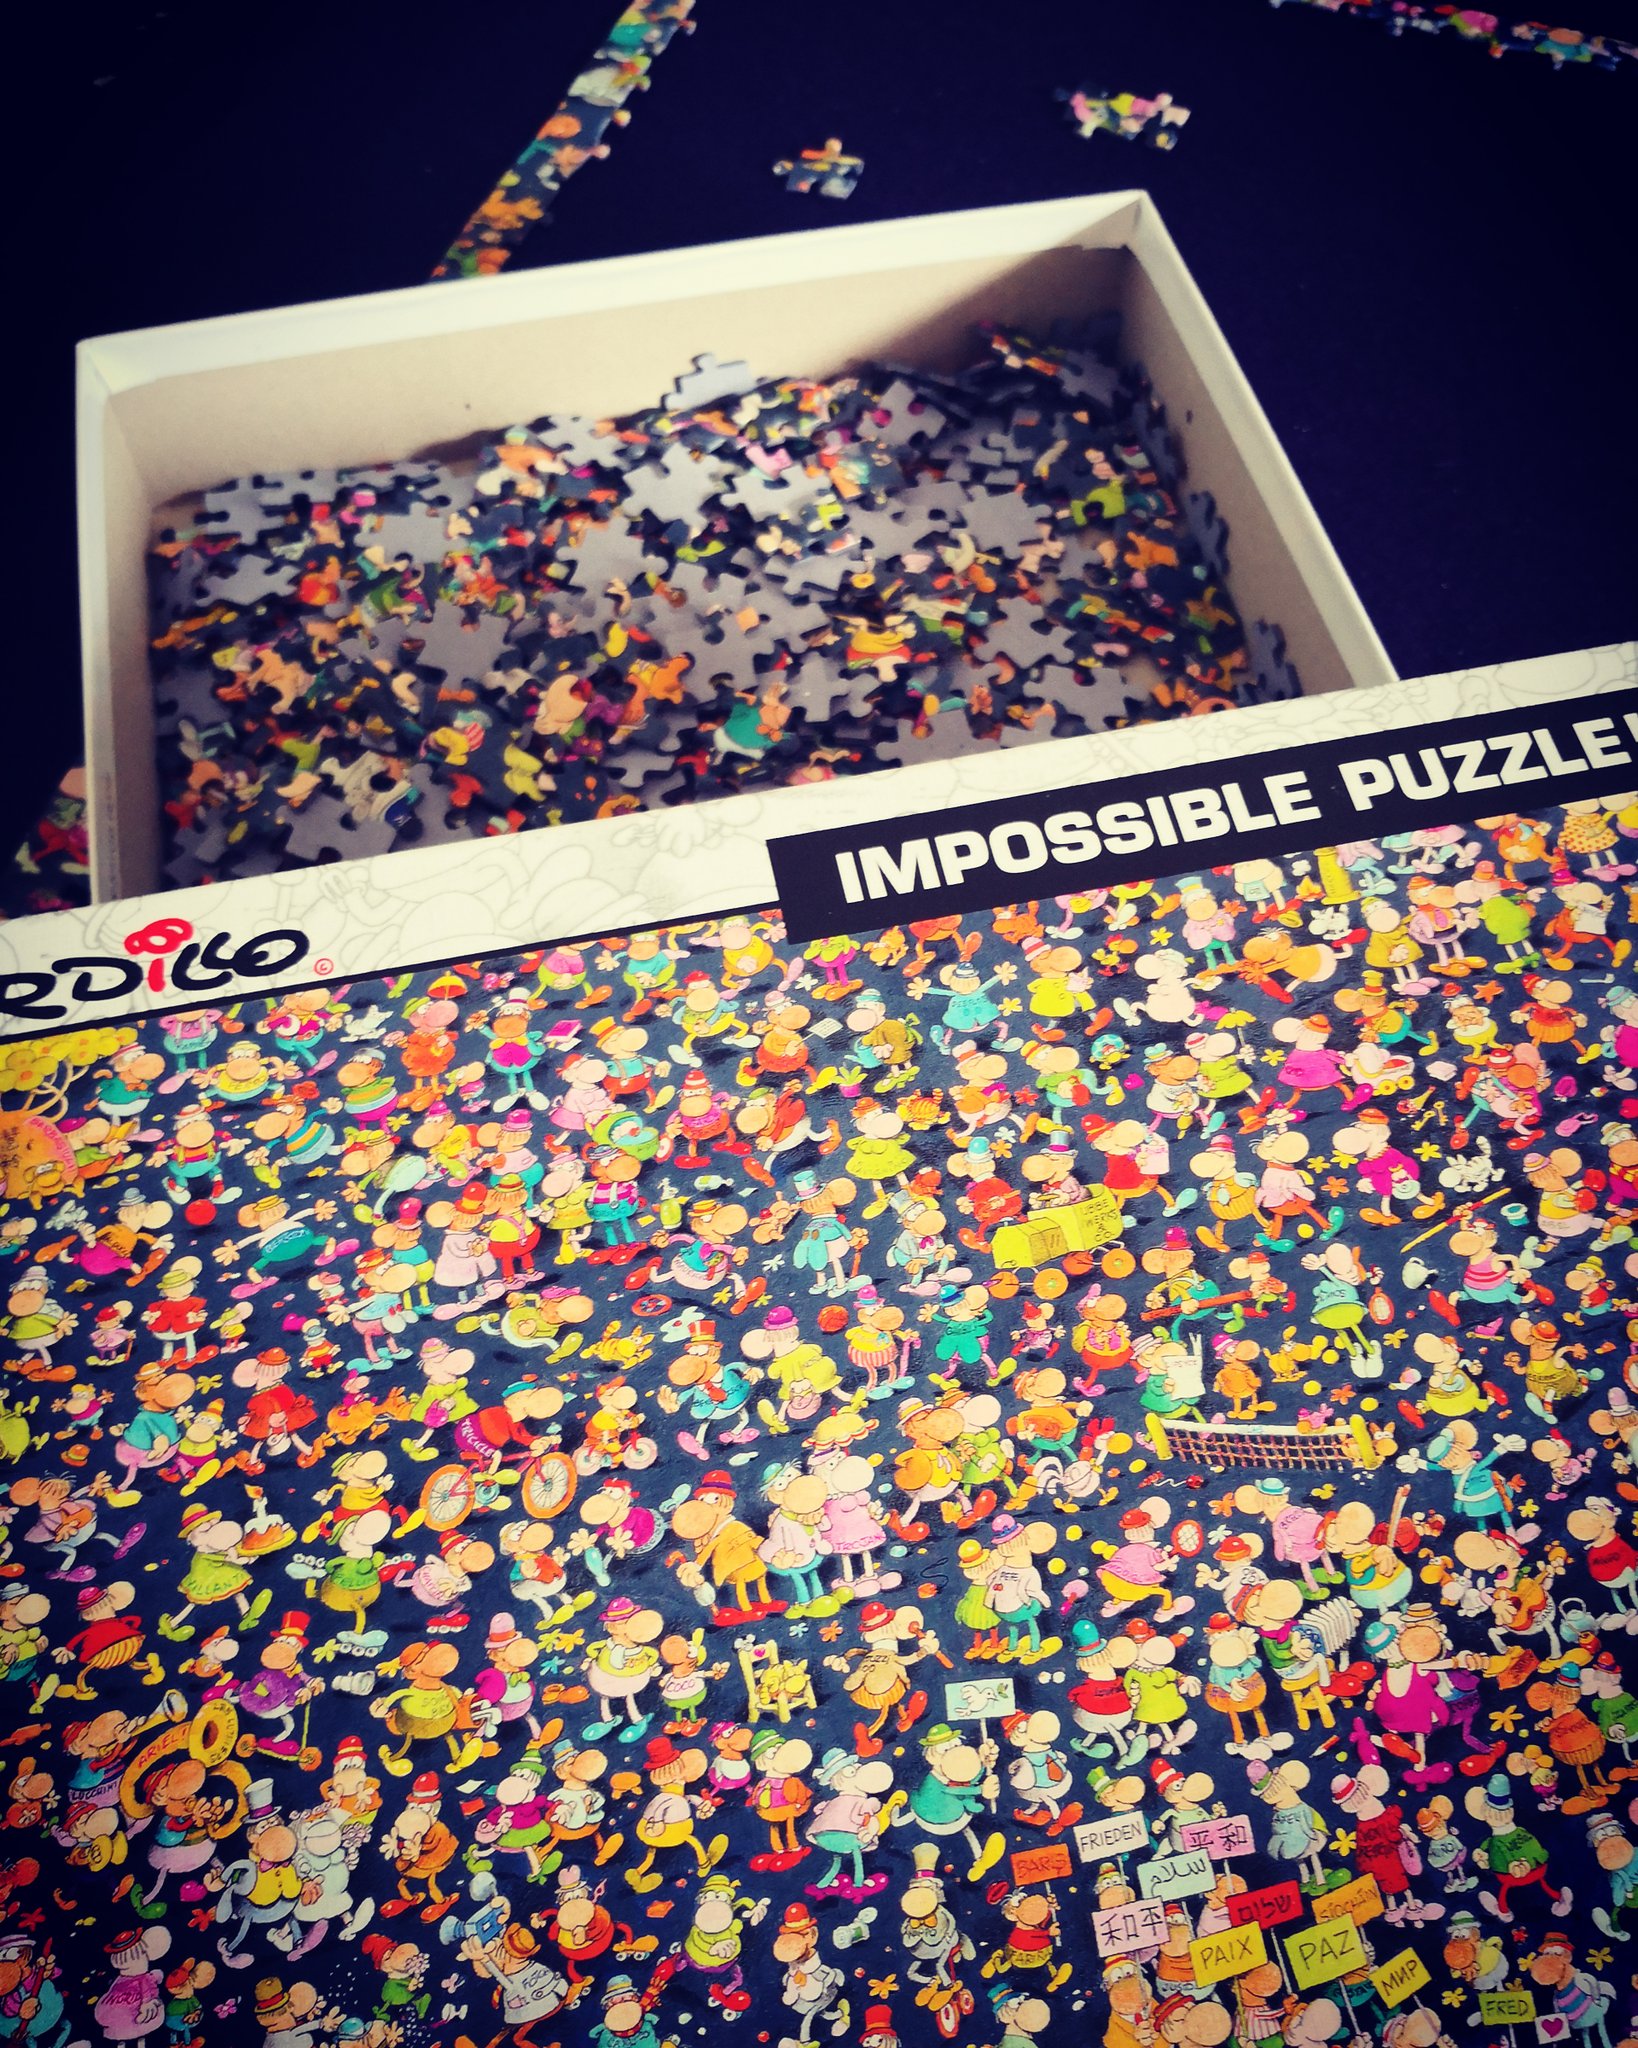 Puzzle 1000 pièces : Impossible puzzle : Mordillo - Clementoni